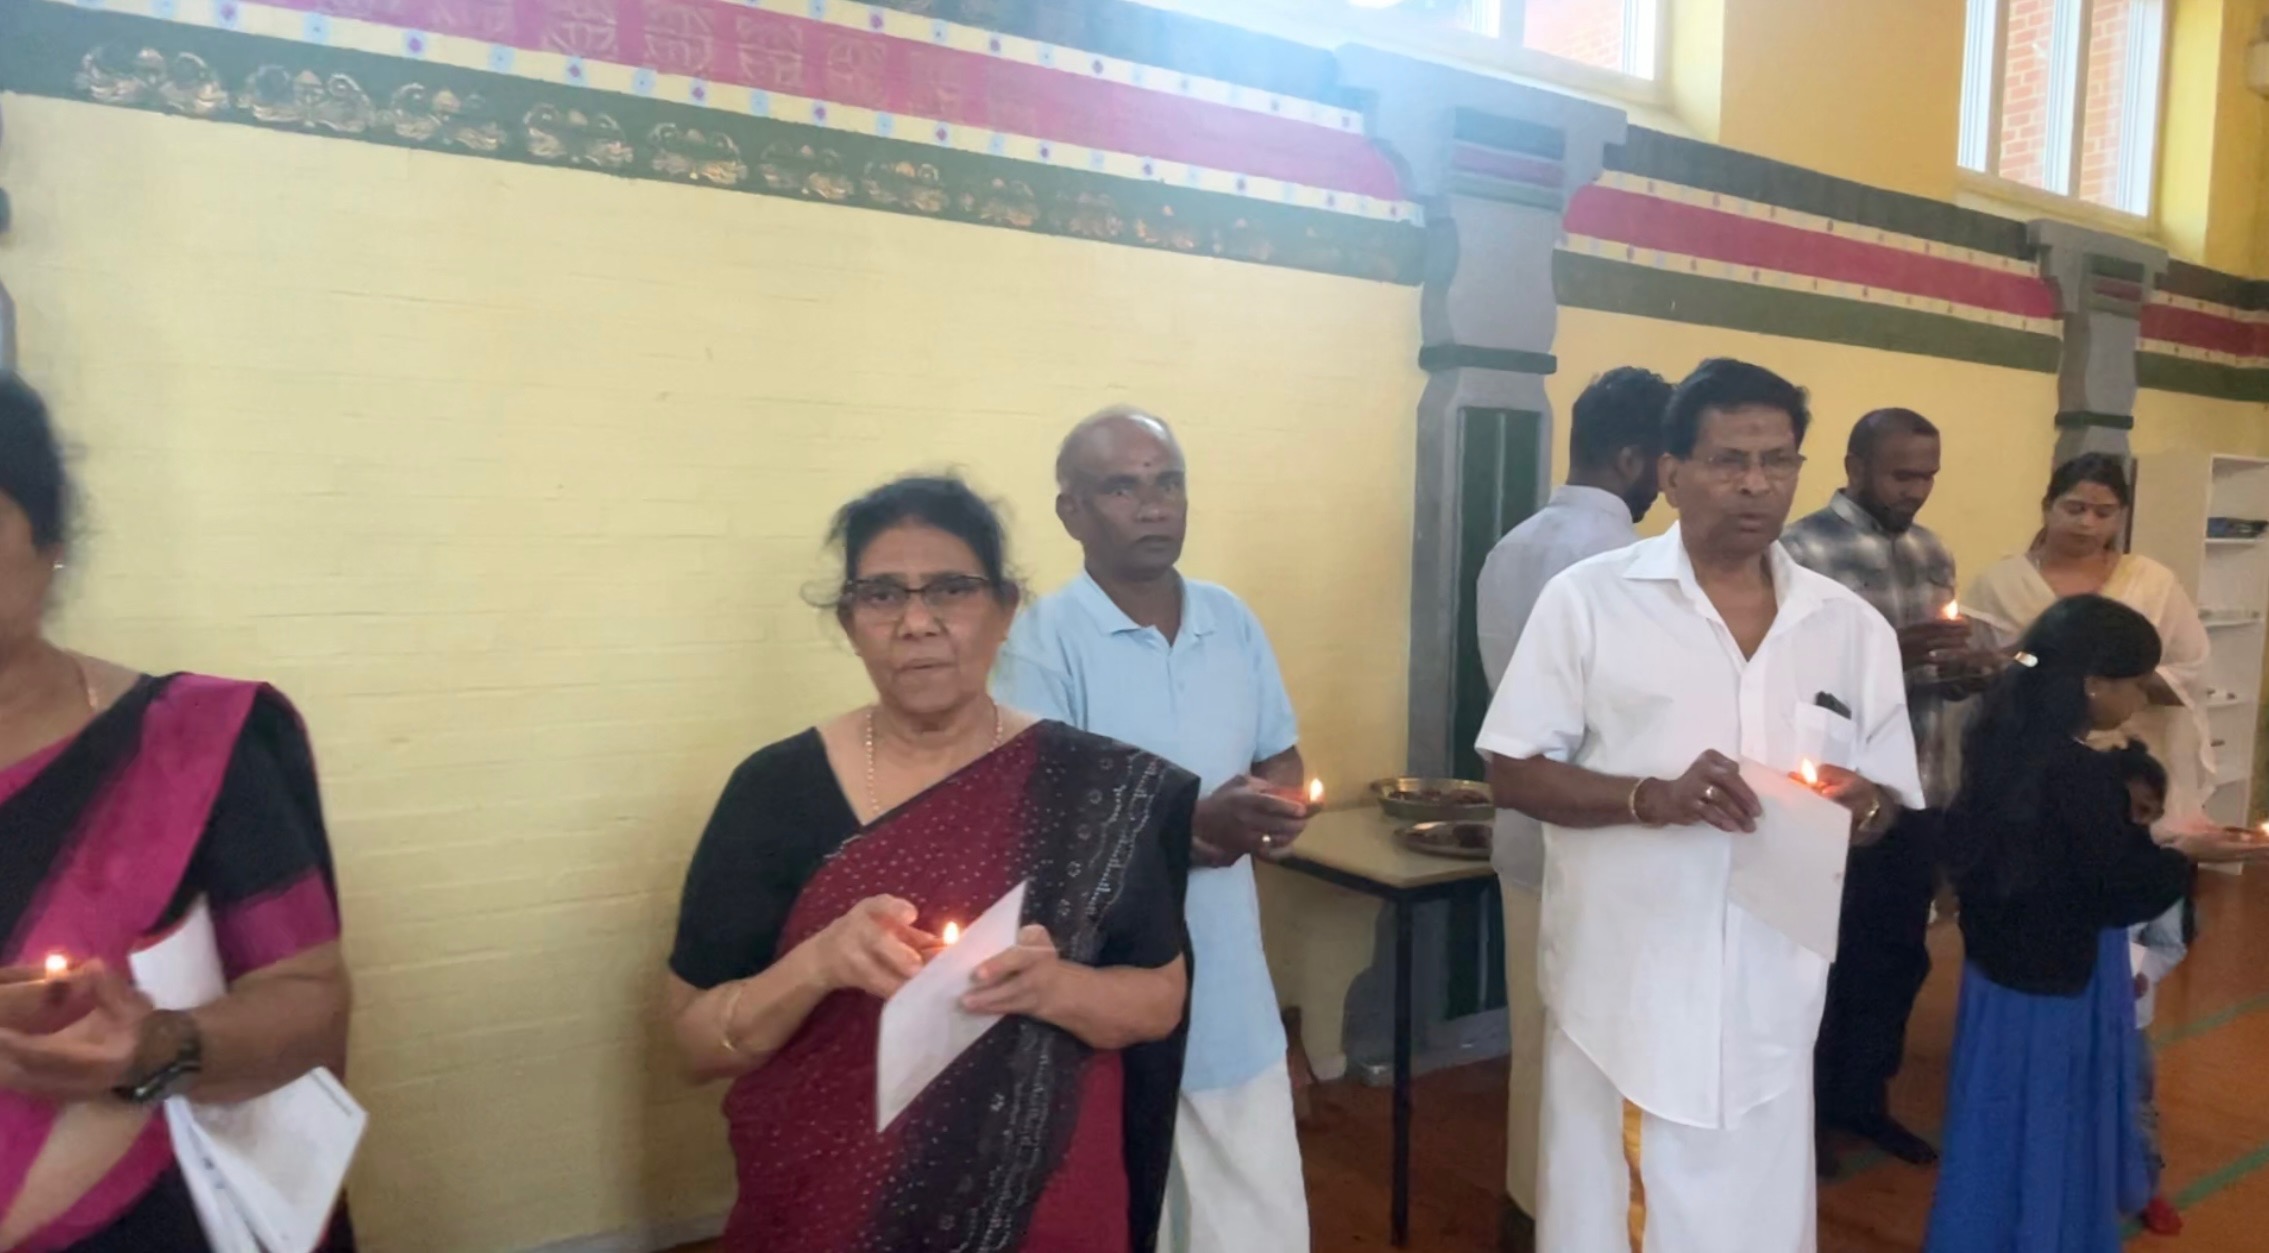 முள்ளிவாய்க்கால் வாரத்தையொட்டி டென்மார்க்கில் நடைபெற்ற கவனயீர்ப்பு 567